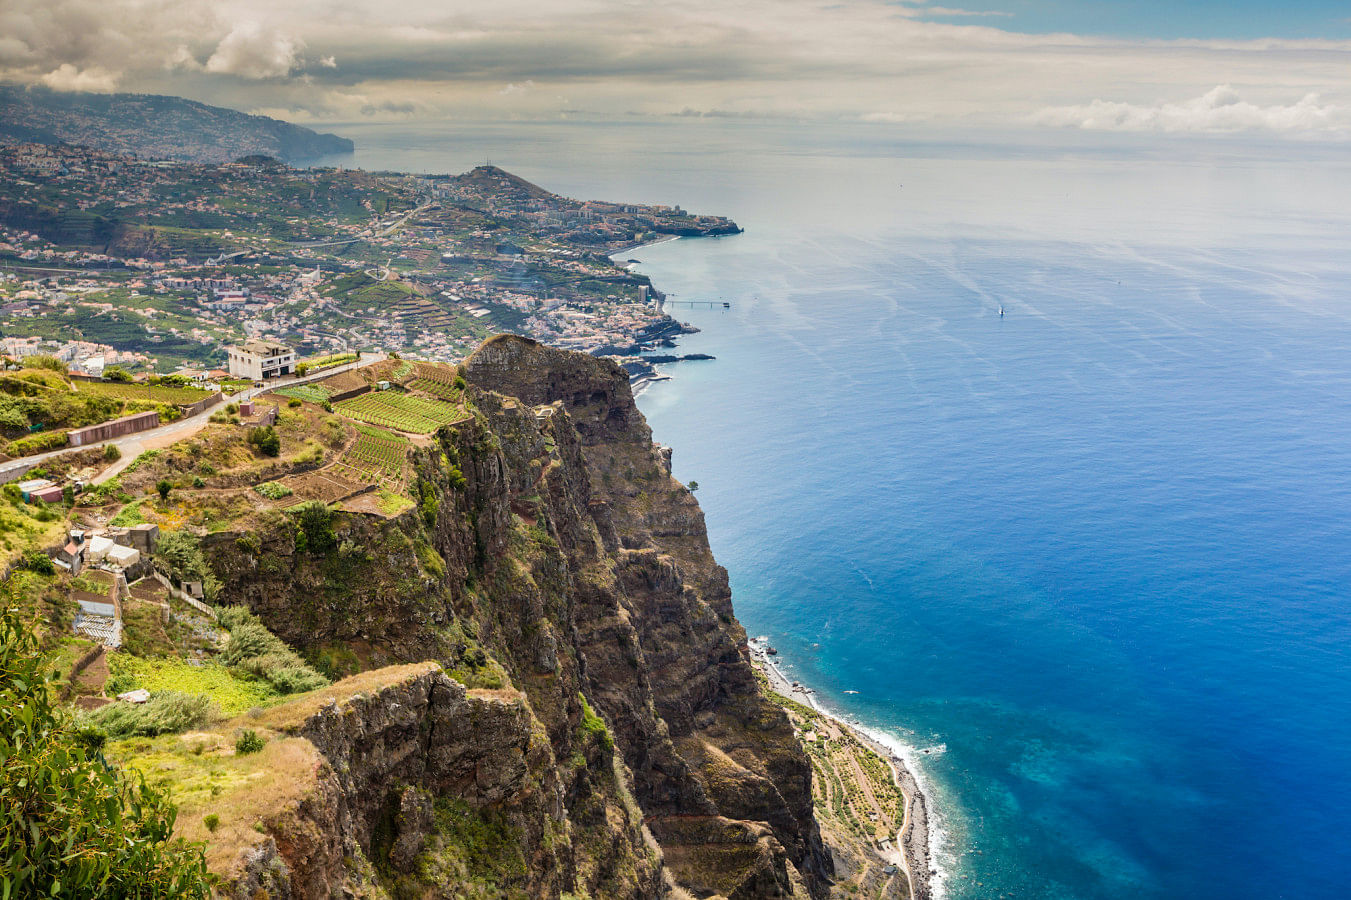 Hyr en båt i Ön Madeira